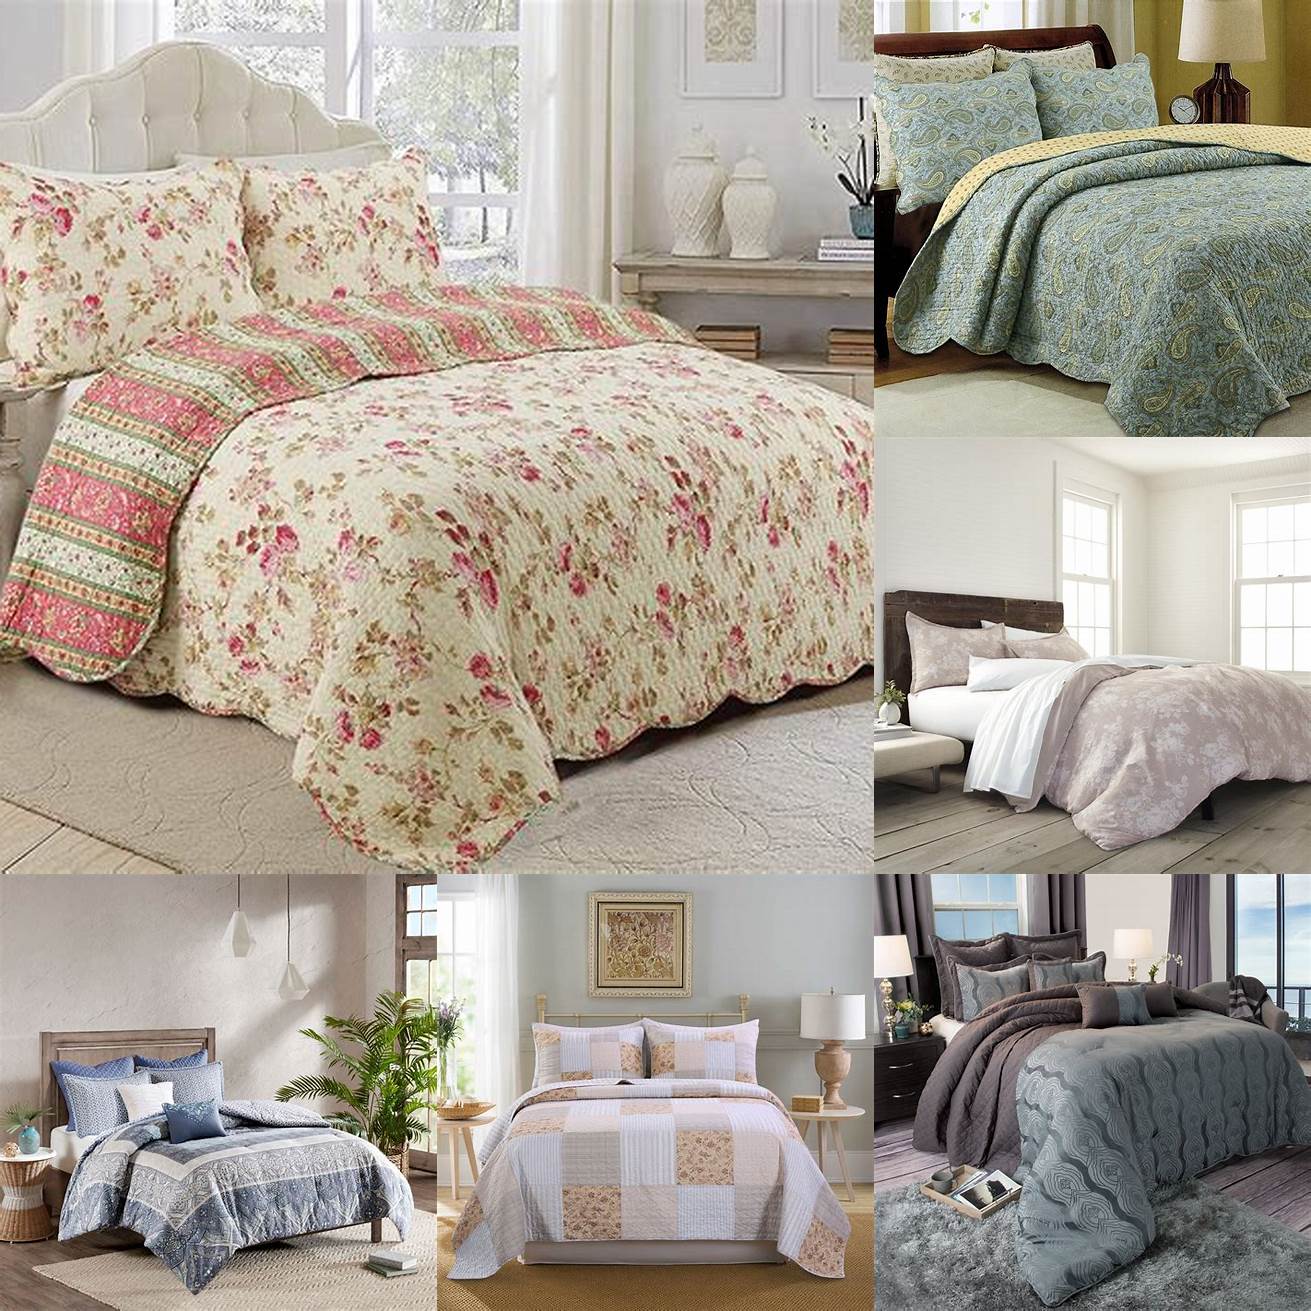 Cotton Bed Sets